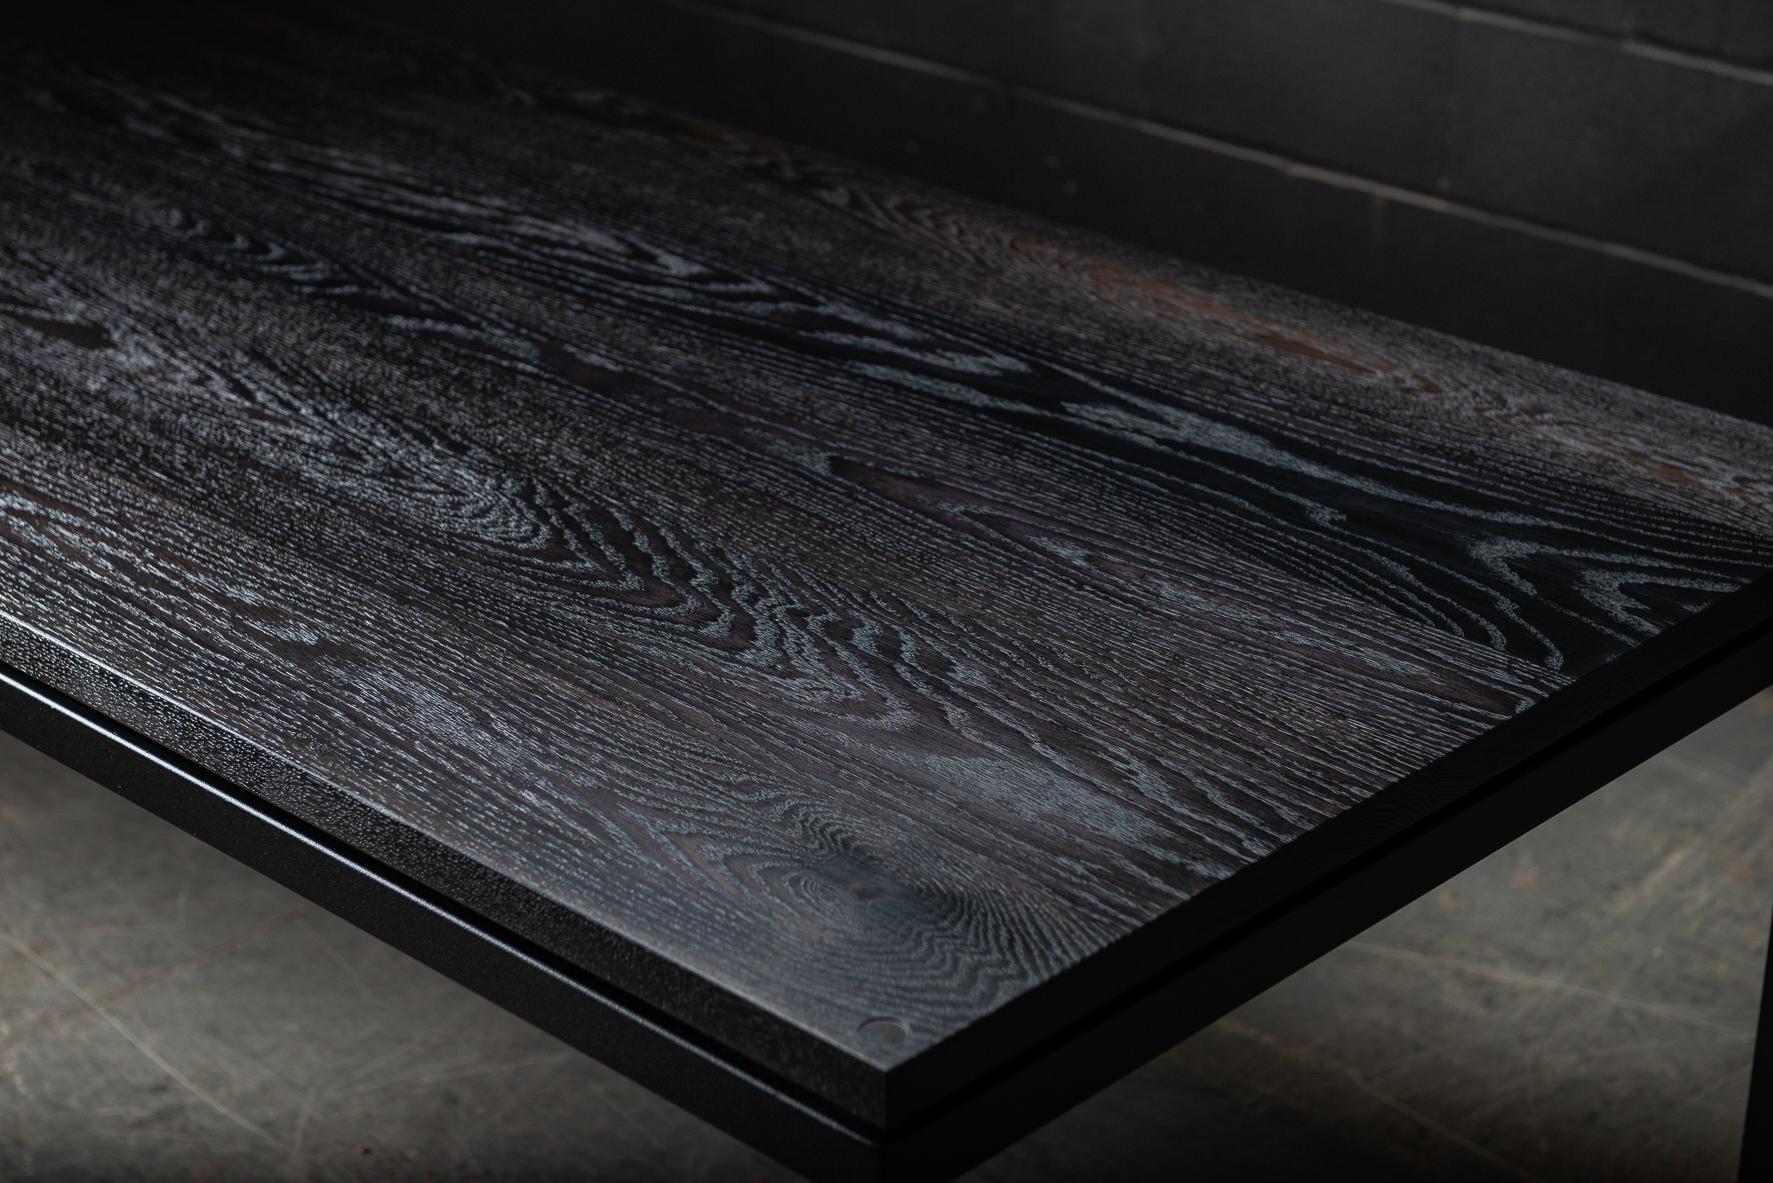 Der Duncan ist ein eleganter, moderner Esstisch, der aus handverlesenem amerikanischem Hartholz gefertigt wird. Die Oberfläche aus Massivholz, die auf einem minimalistischen Metallsockel schwebt, sorgt für ein klares, modernes Erscheinungsbild mit